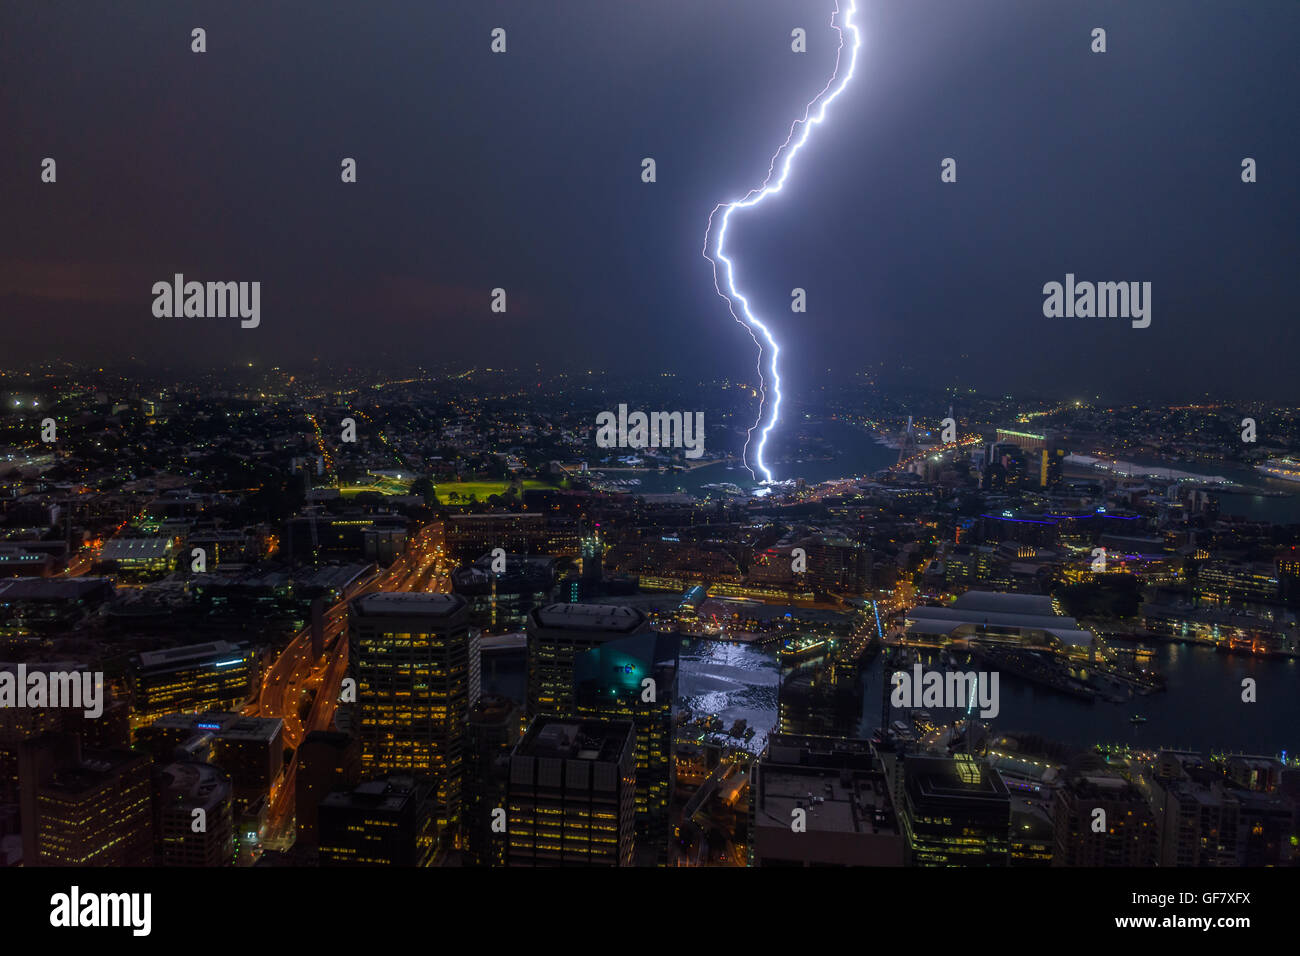 Double lightning strike during thunderstorm in Sydney, Australia Stock Photo